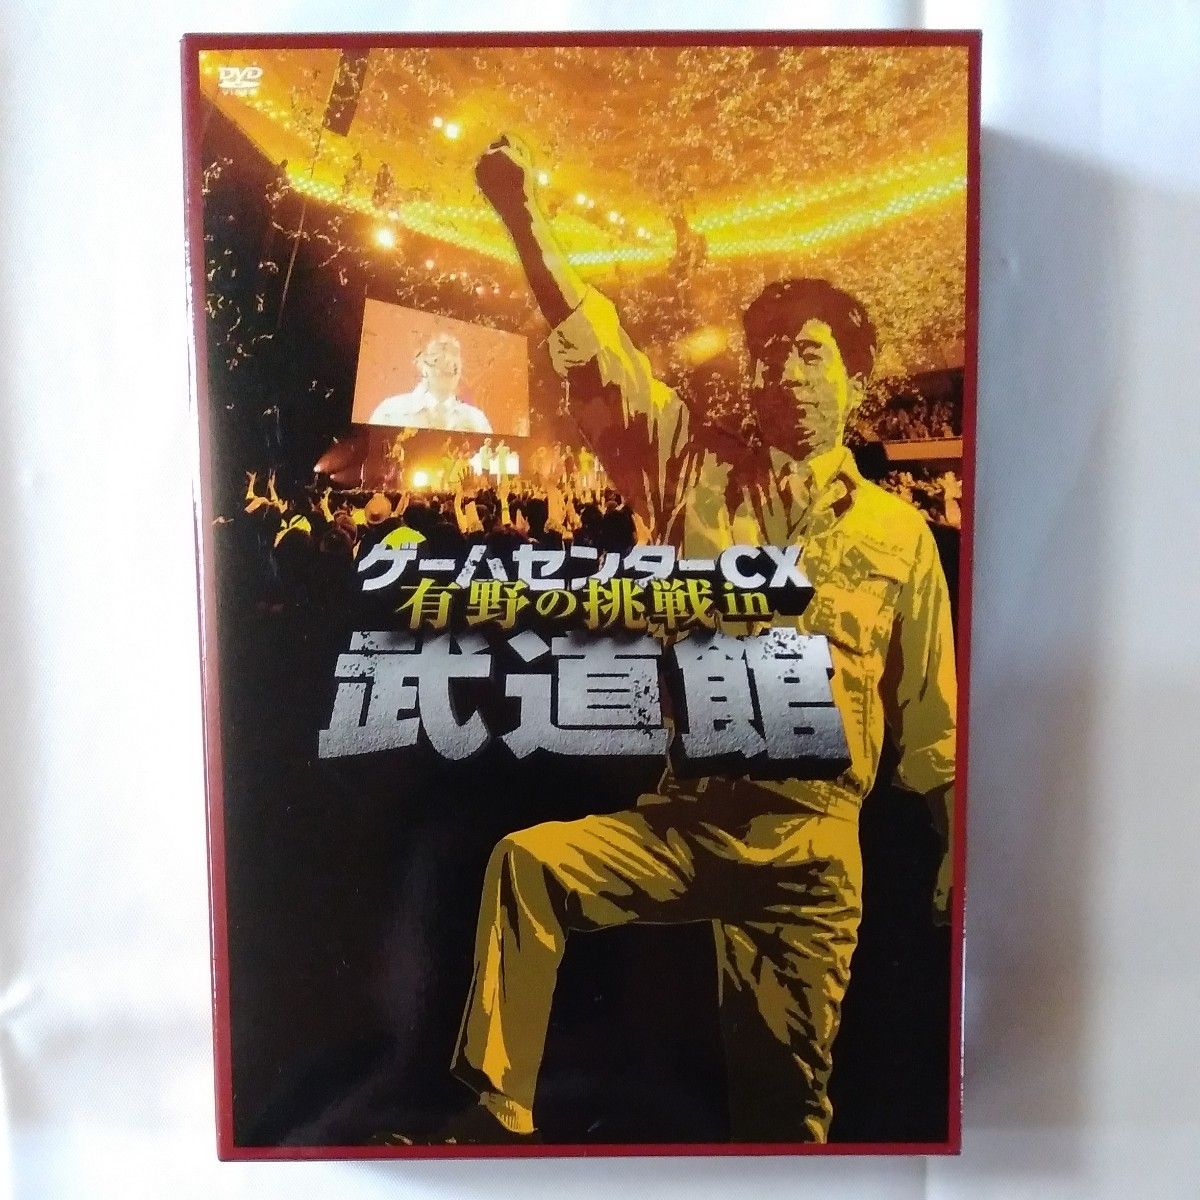 ゲームセンターCX DVD-BOX 有野の挑戦in武道館